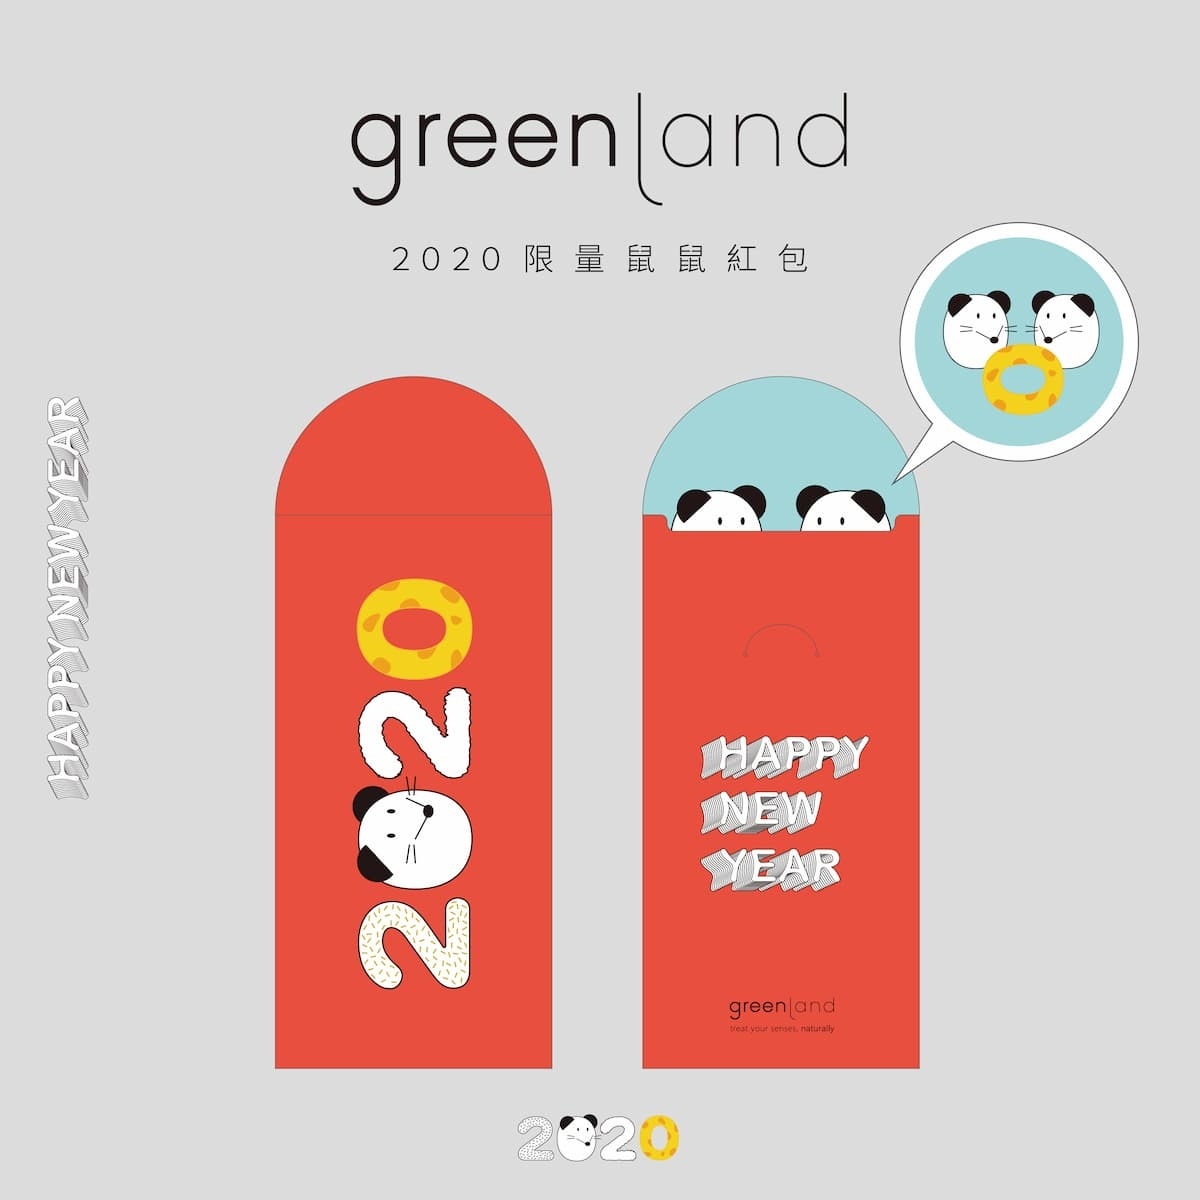 greenland 2020鼠鼠限量桌曆示意圖。